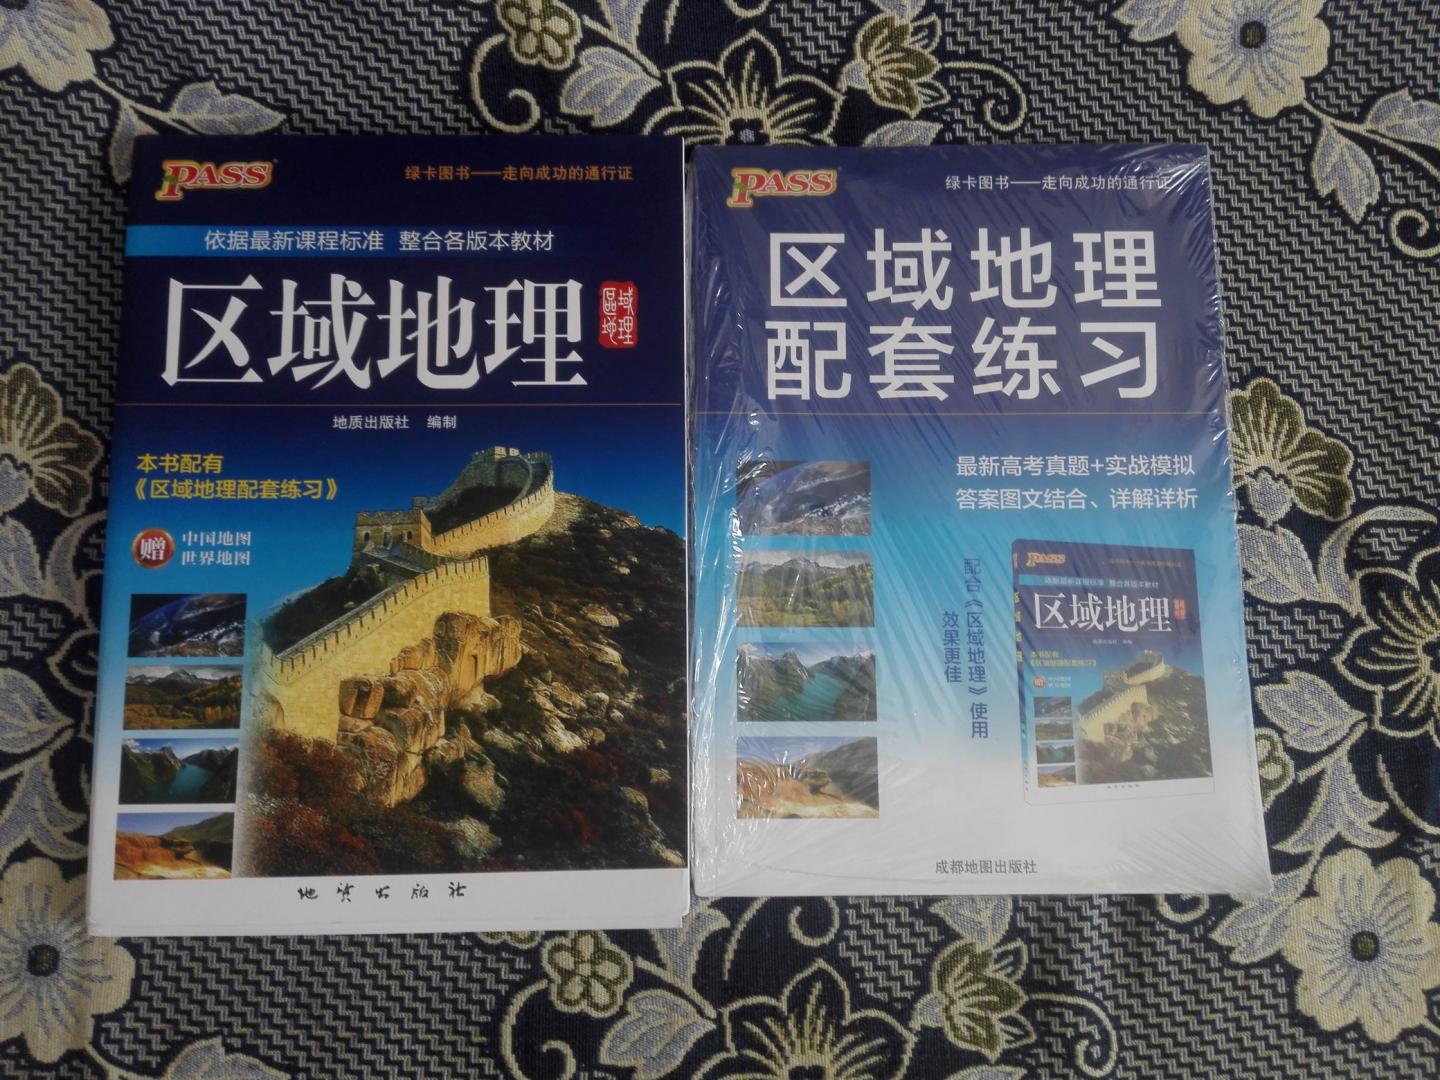 同事的小朋友要学文科（她理科很好的），买些配套练习。印刷不错，封皮正好是中国地图+世界地图，设计不错。送货及时，正好用上。